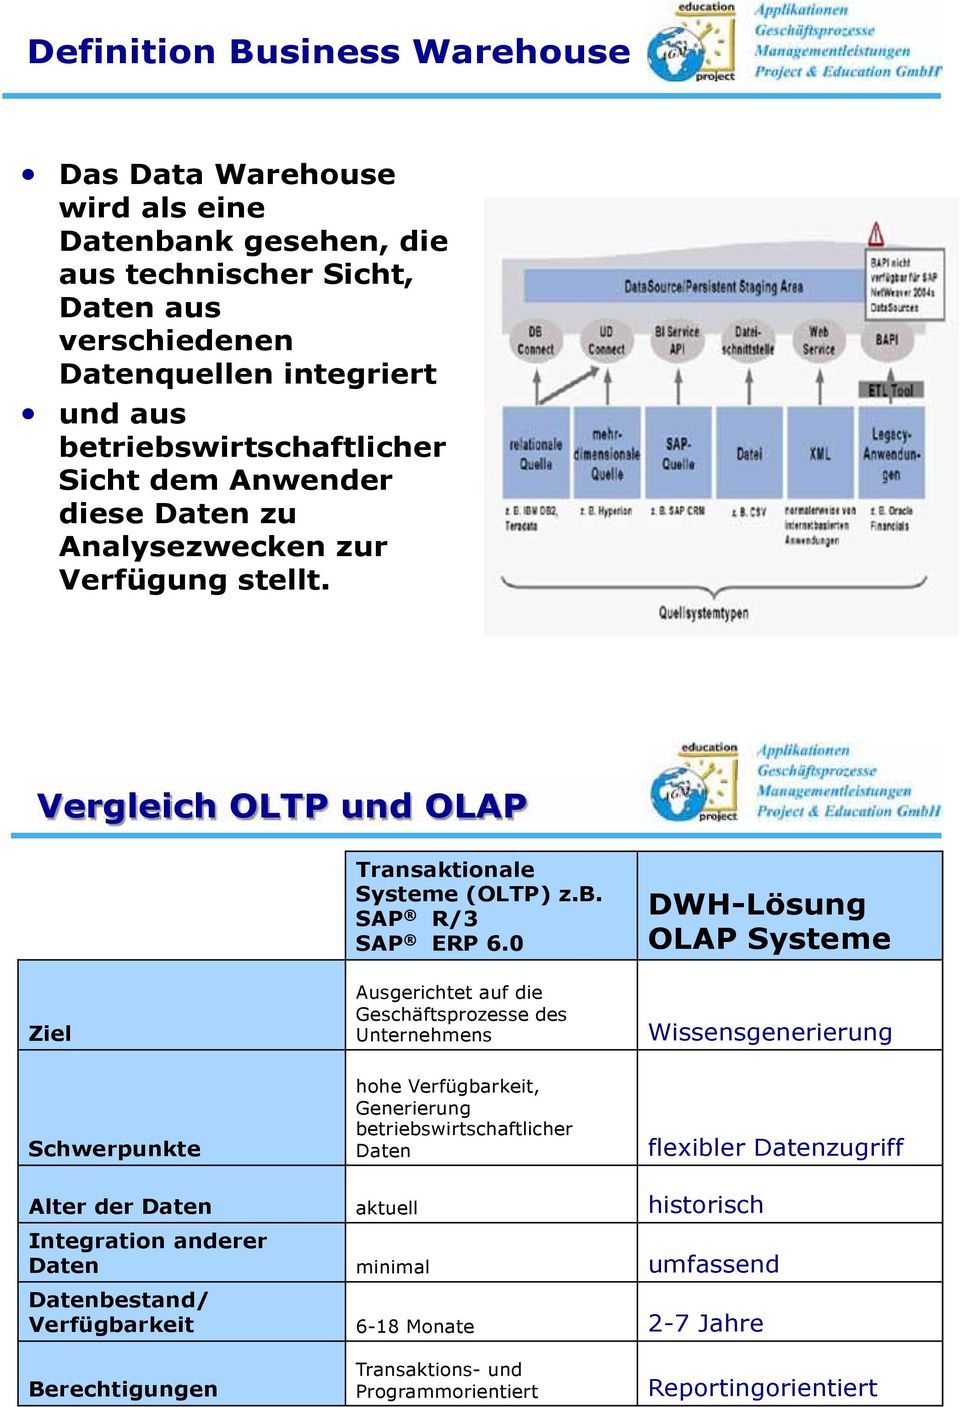 0 Ausgerichtet auf die Geschäftsprozesse des Unternehmens DWH-Lösung OLAP Systeme Wissensgenerierung Schwerpunkte hohe Verfügbarkeit, Generierung betriebswirtschaftlicher Daten flexibler Datenzugriff